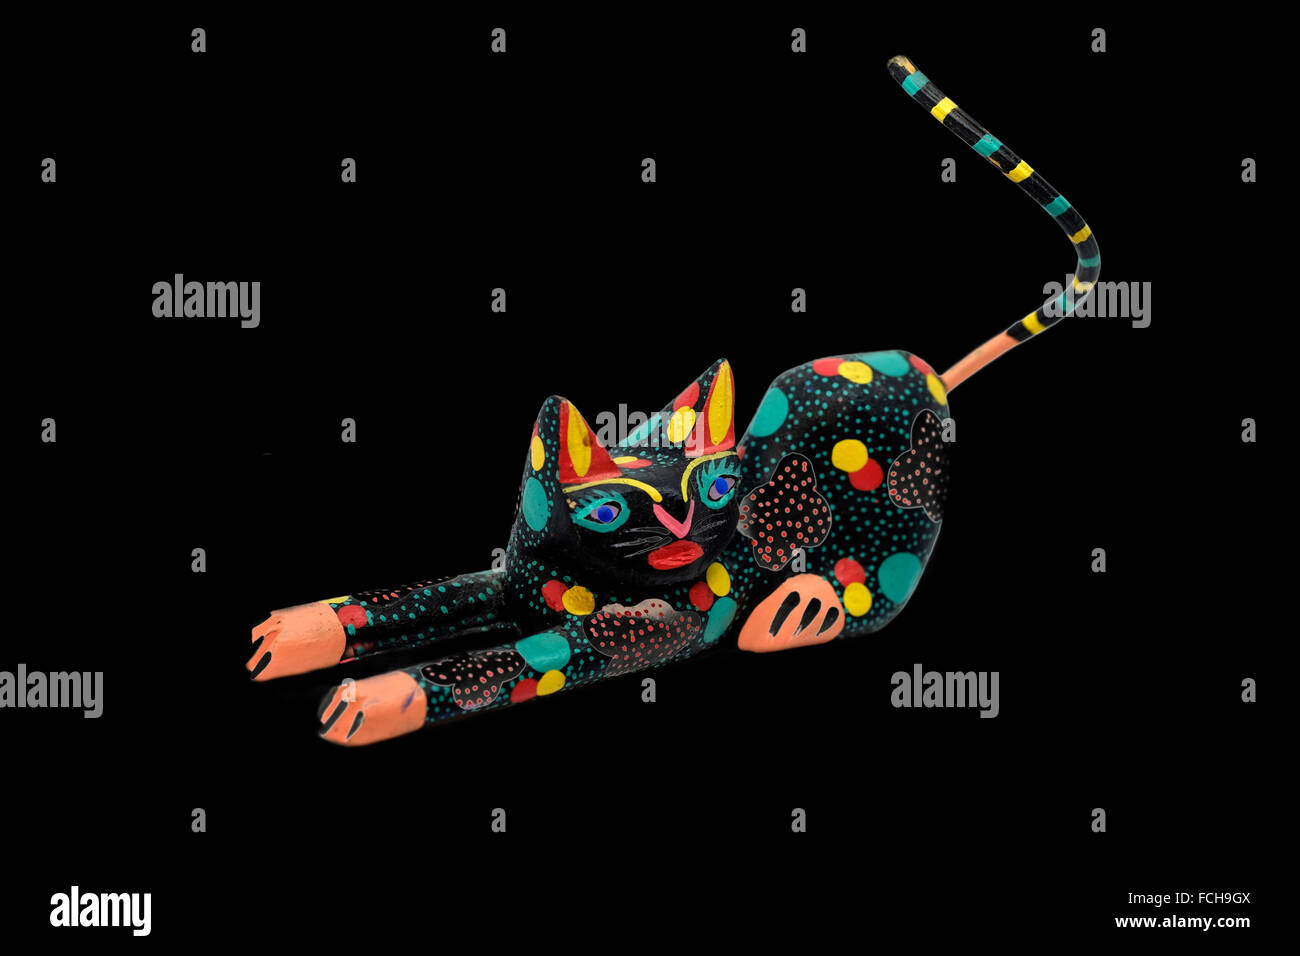 Intagliato messicano cat figurina ,altamente stilizzato e colorato, cut-out su sfondo nero Foto Stock